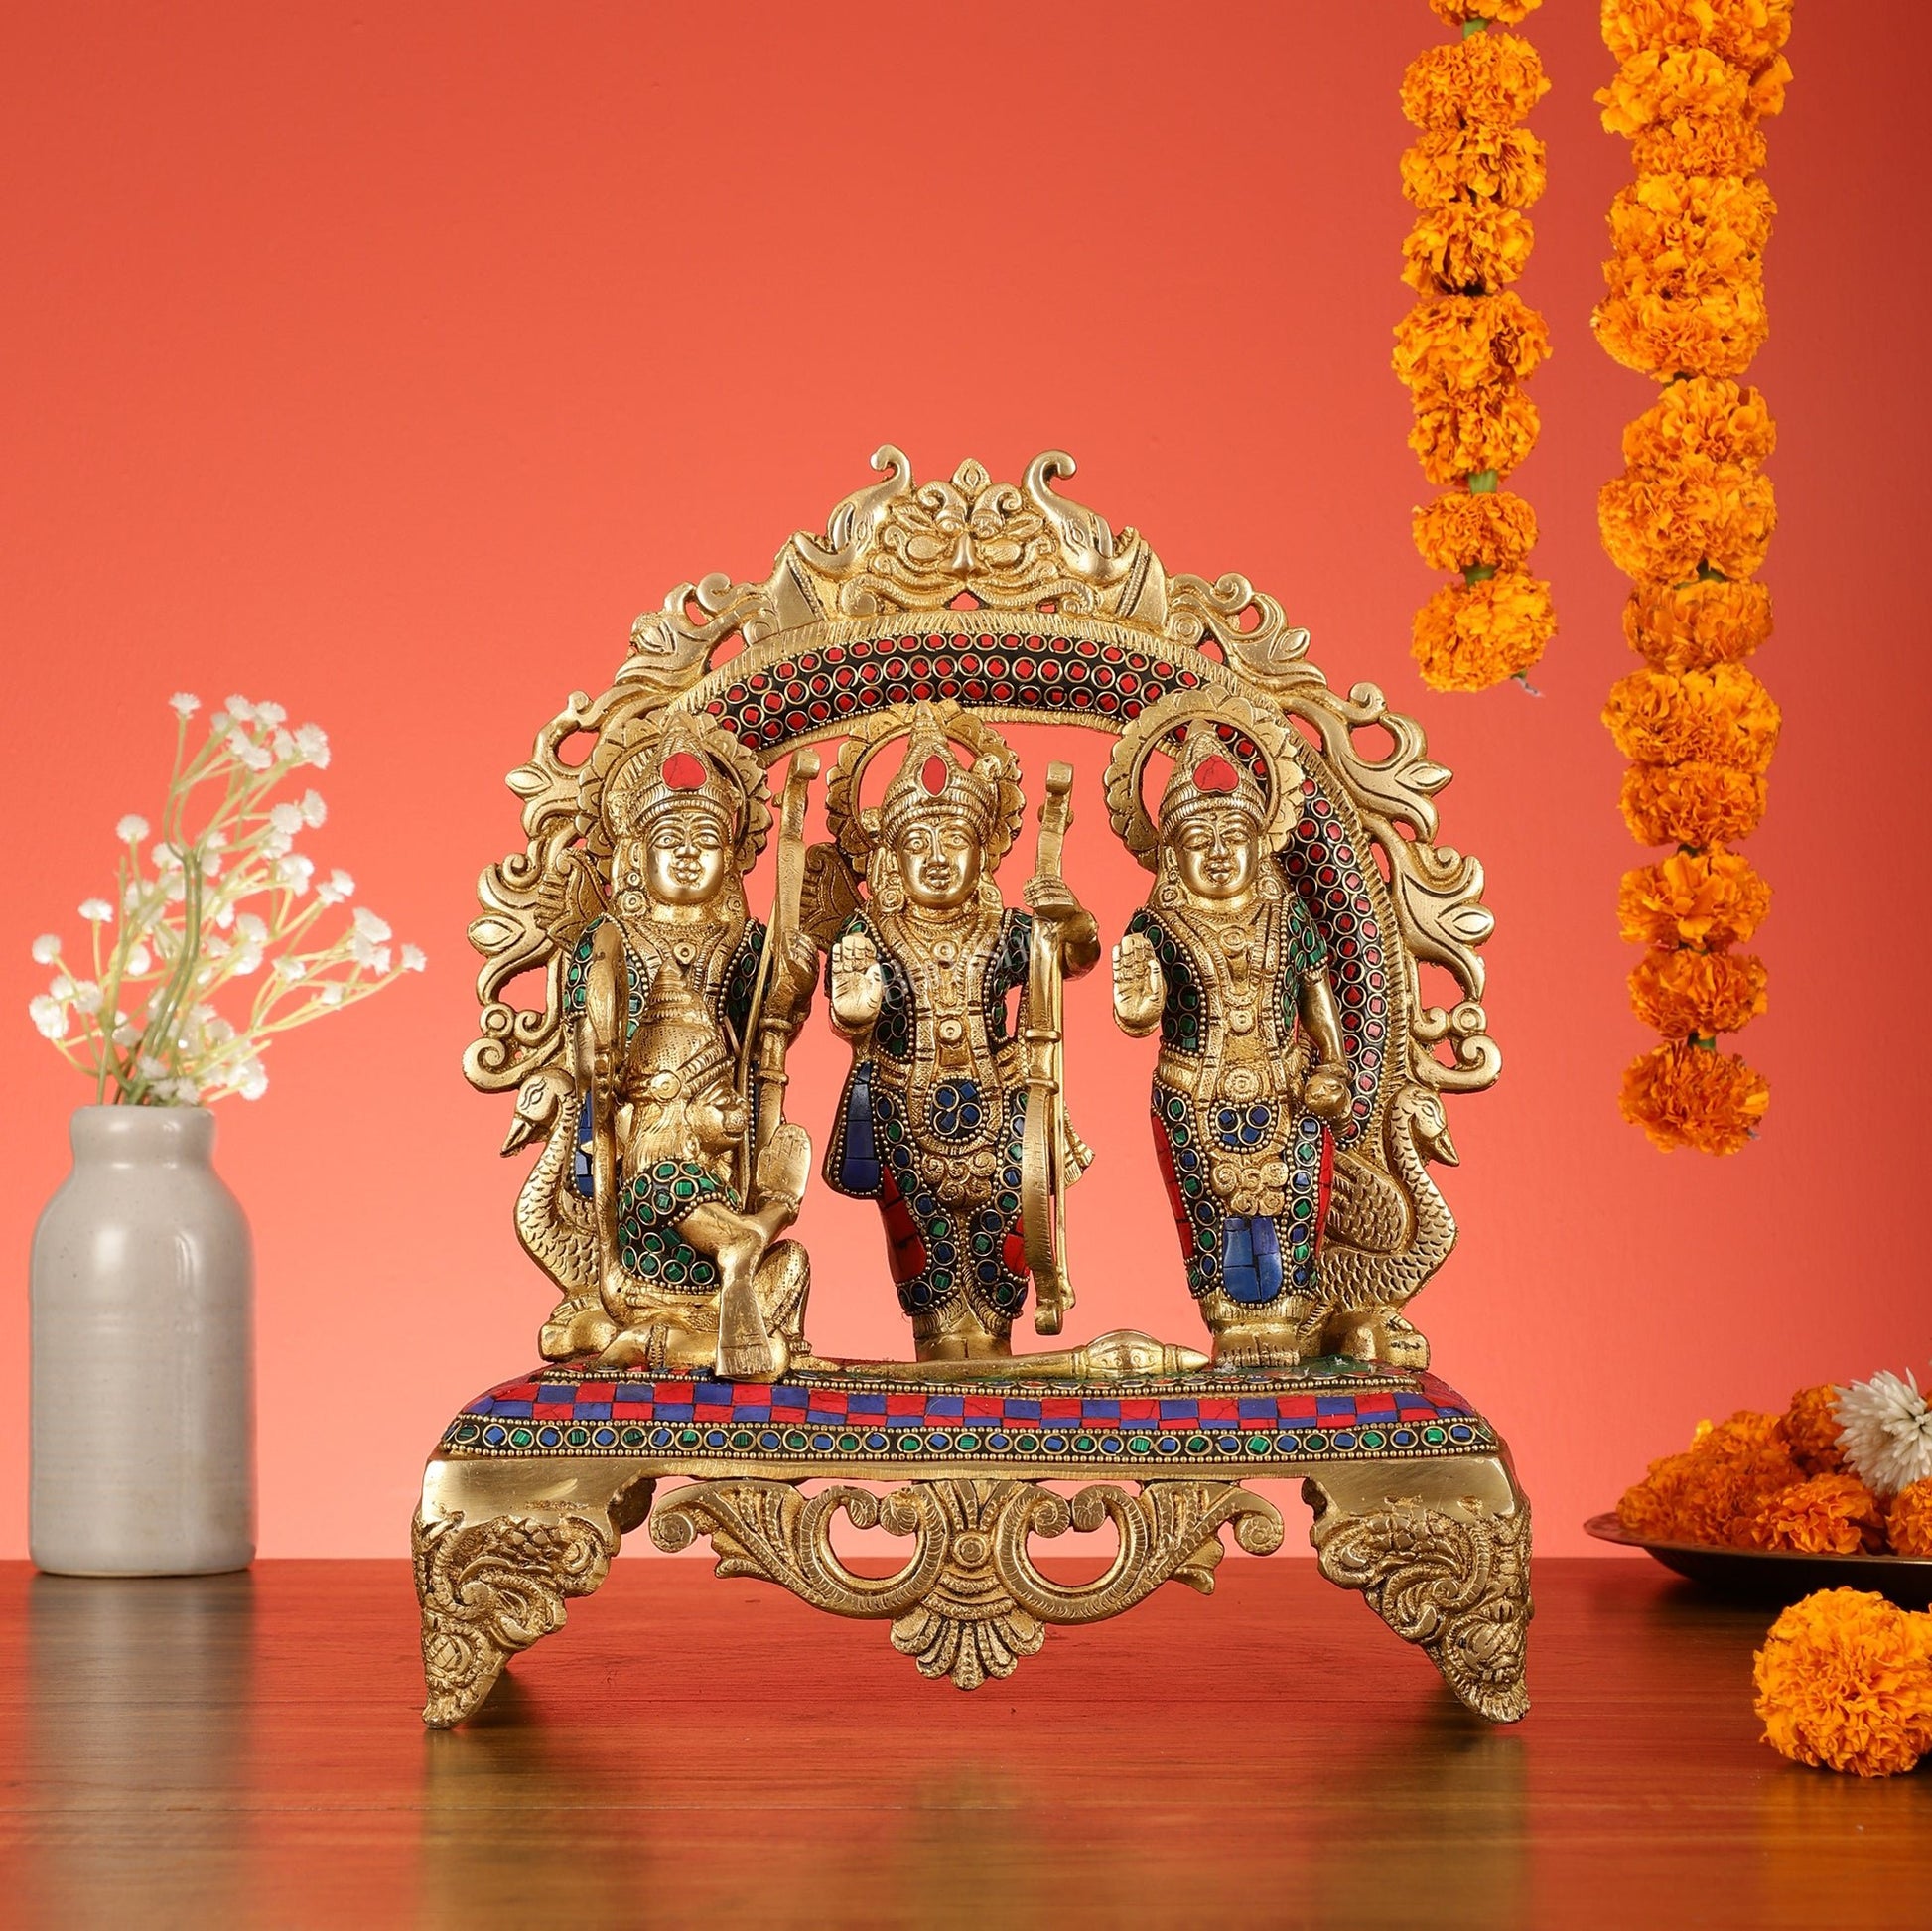 Brass Ram Darbar Idol with Stonework - 12.5 Inch - Budhshiv.com